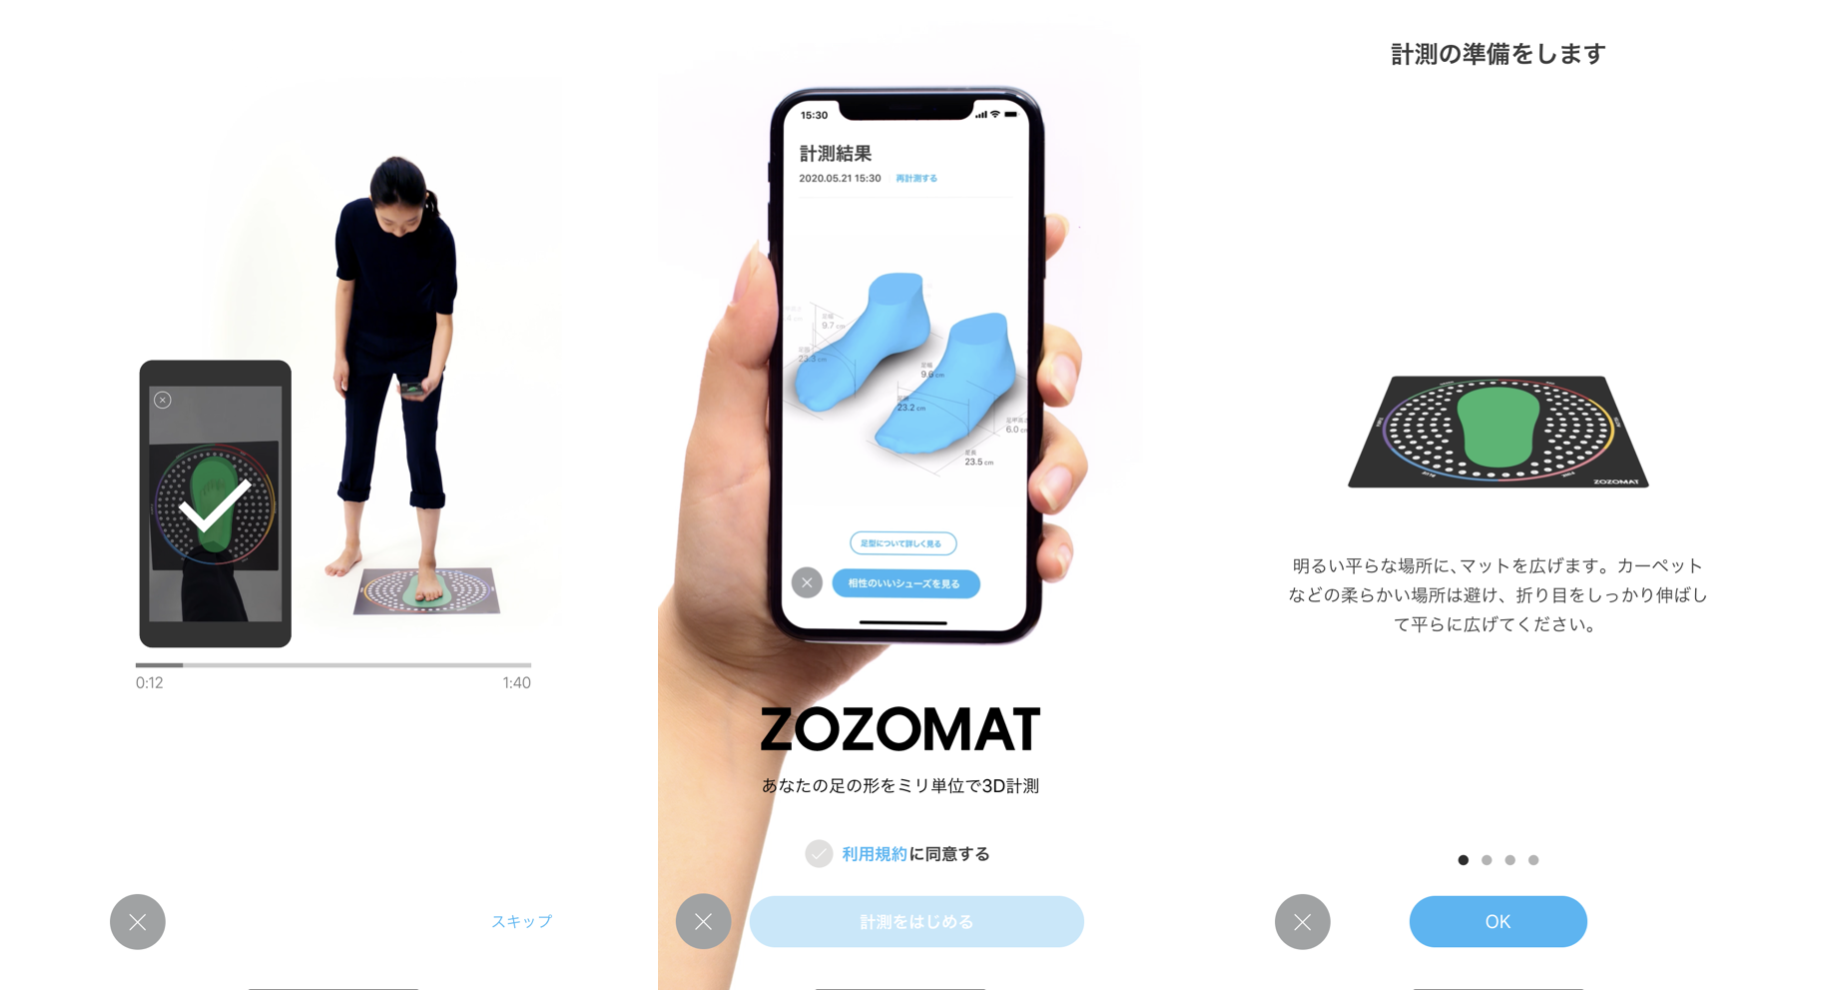 「靴の通販」に風穴を開ける。足を3Dデータ化して最適な靴をオススメ「ZOZOMAT」